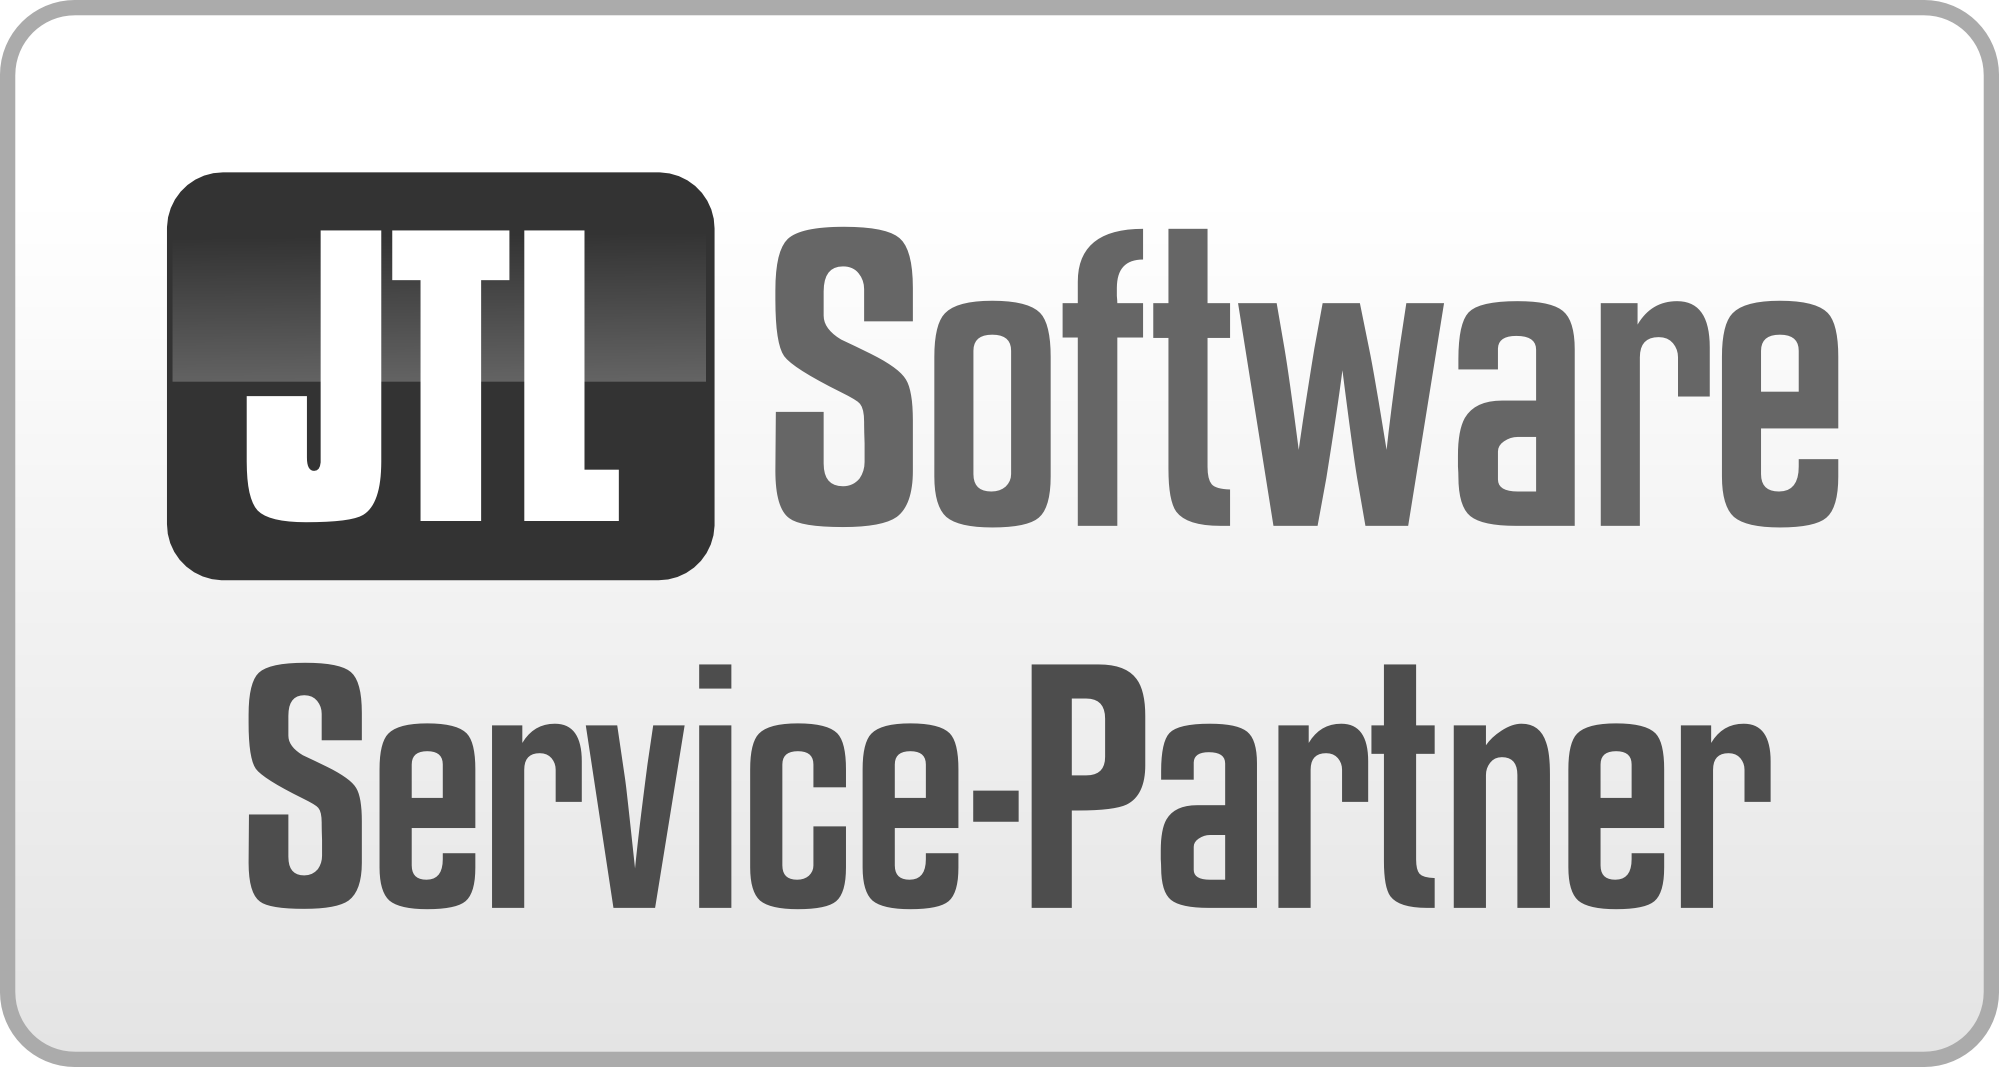 JTL-Servicepartner